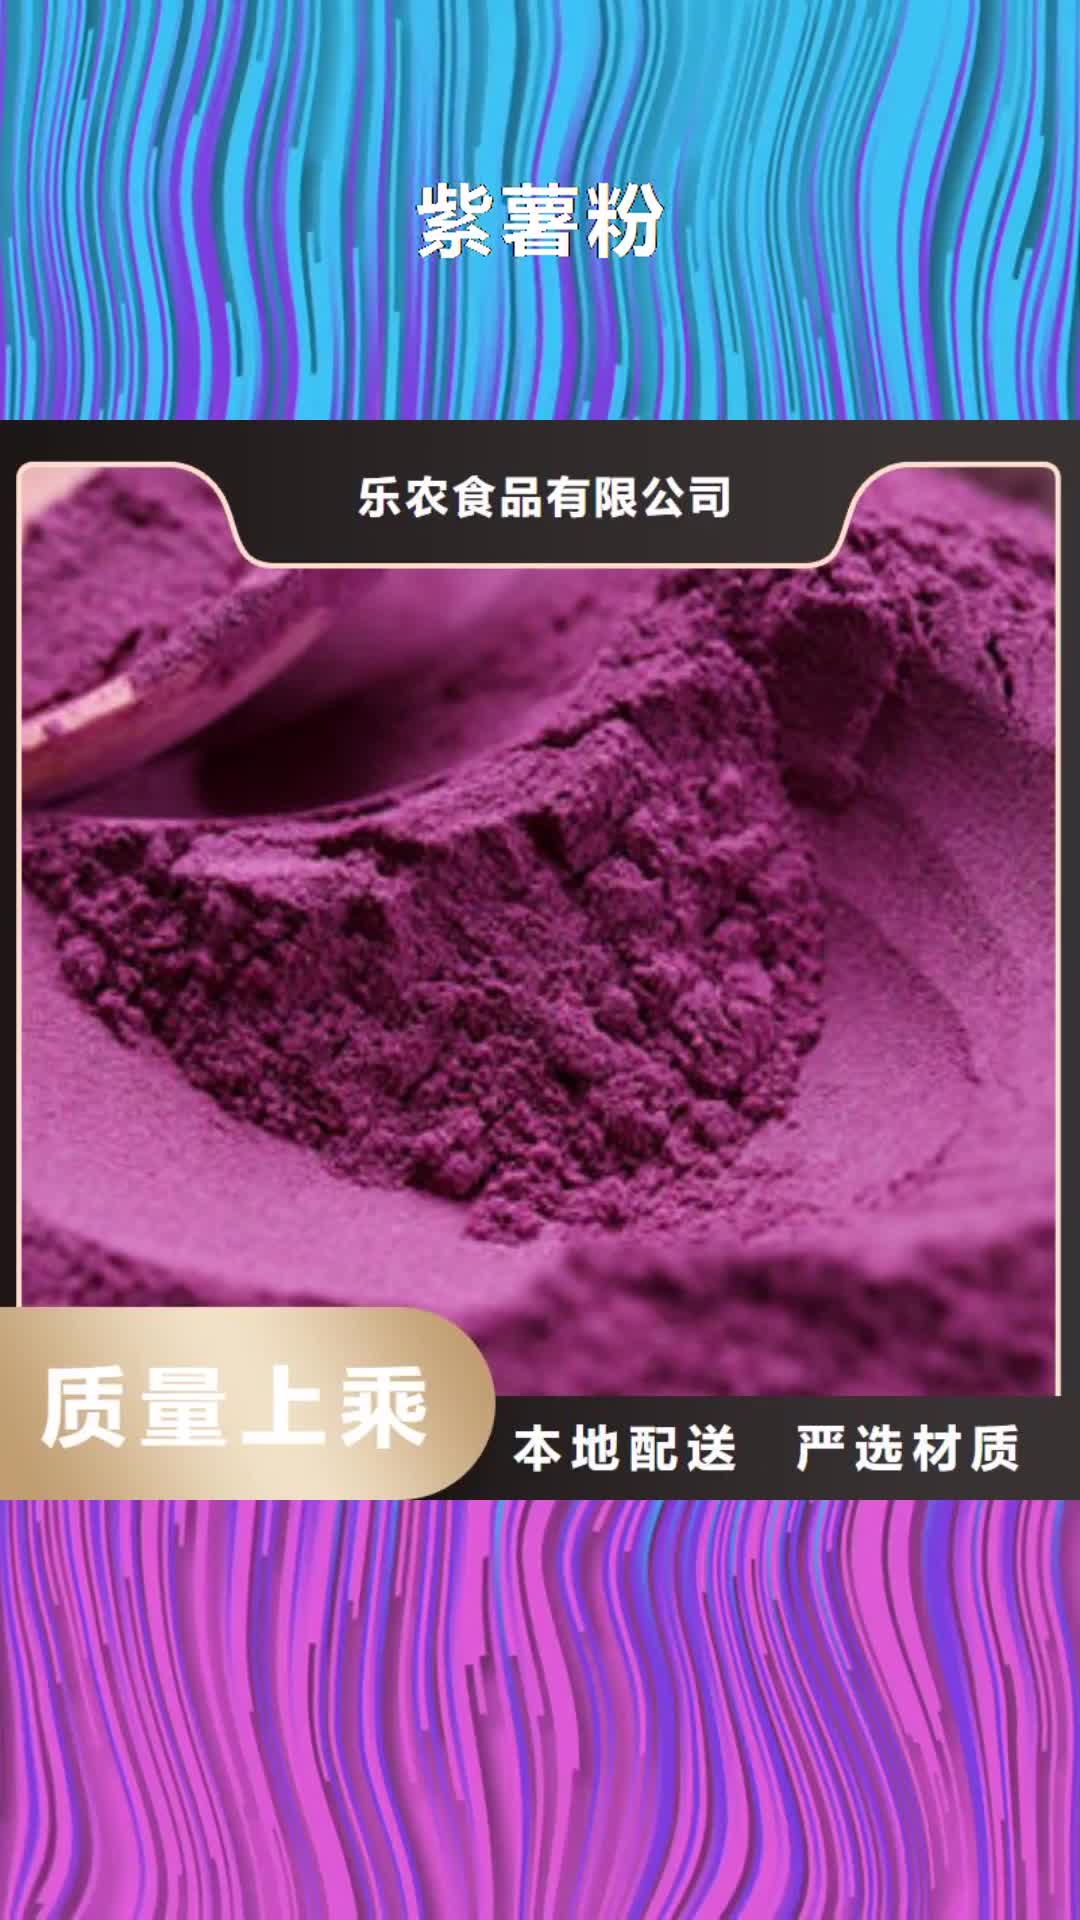 鄂尔多斯【紫薯粉】,胡萝卜粉根据要求定制